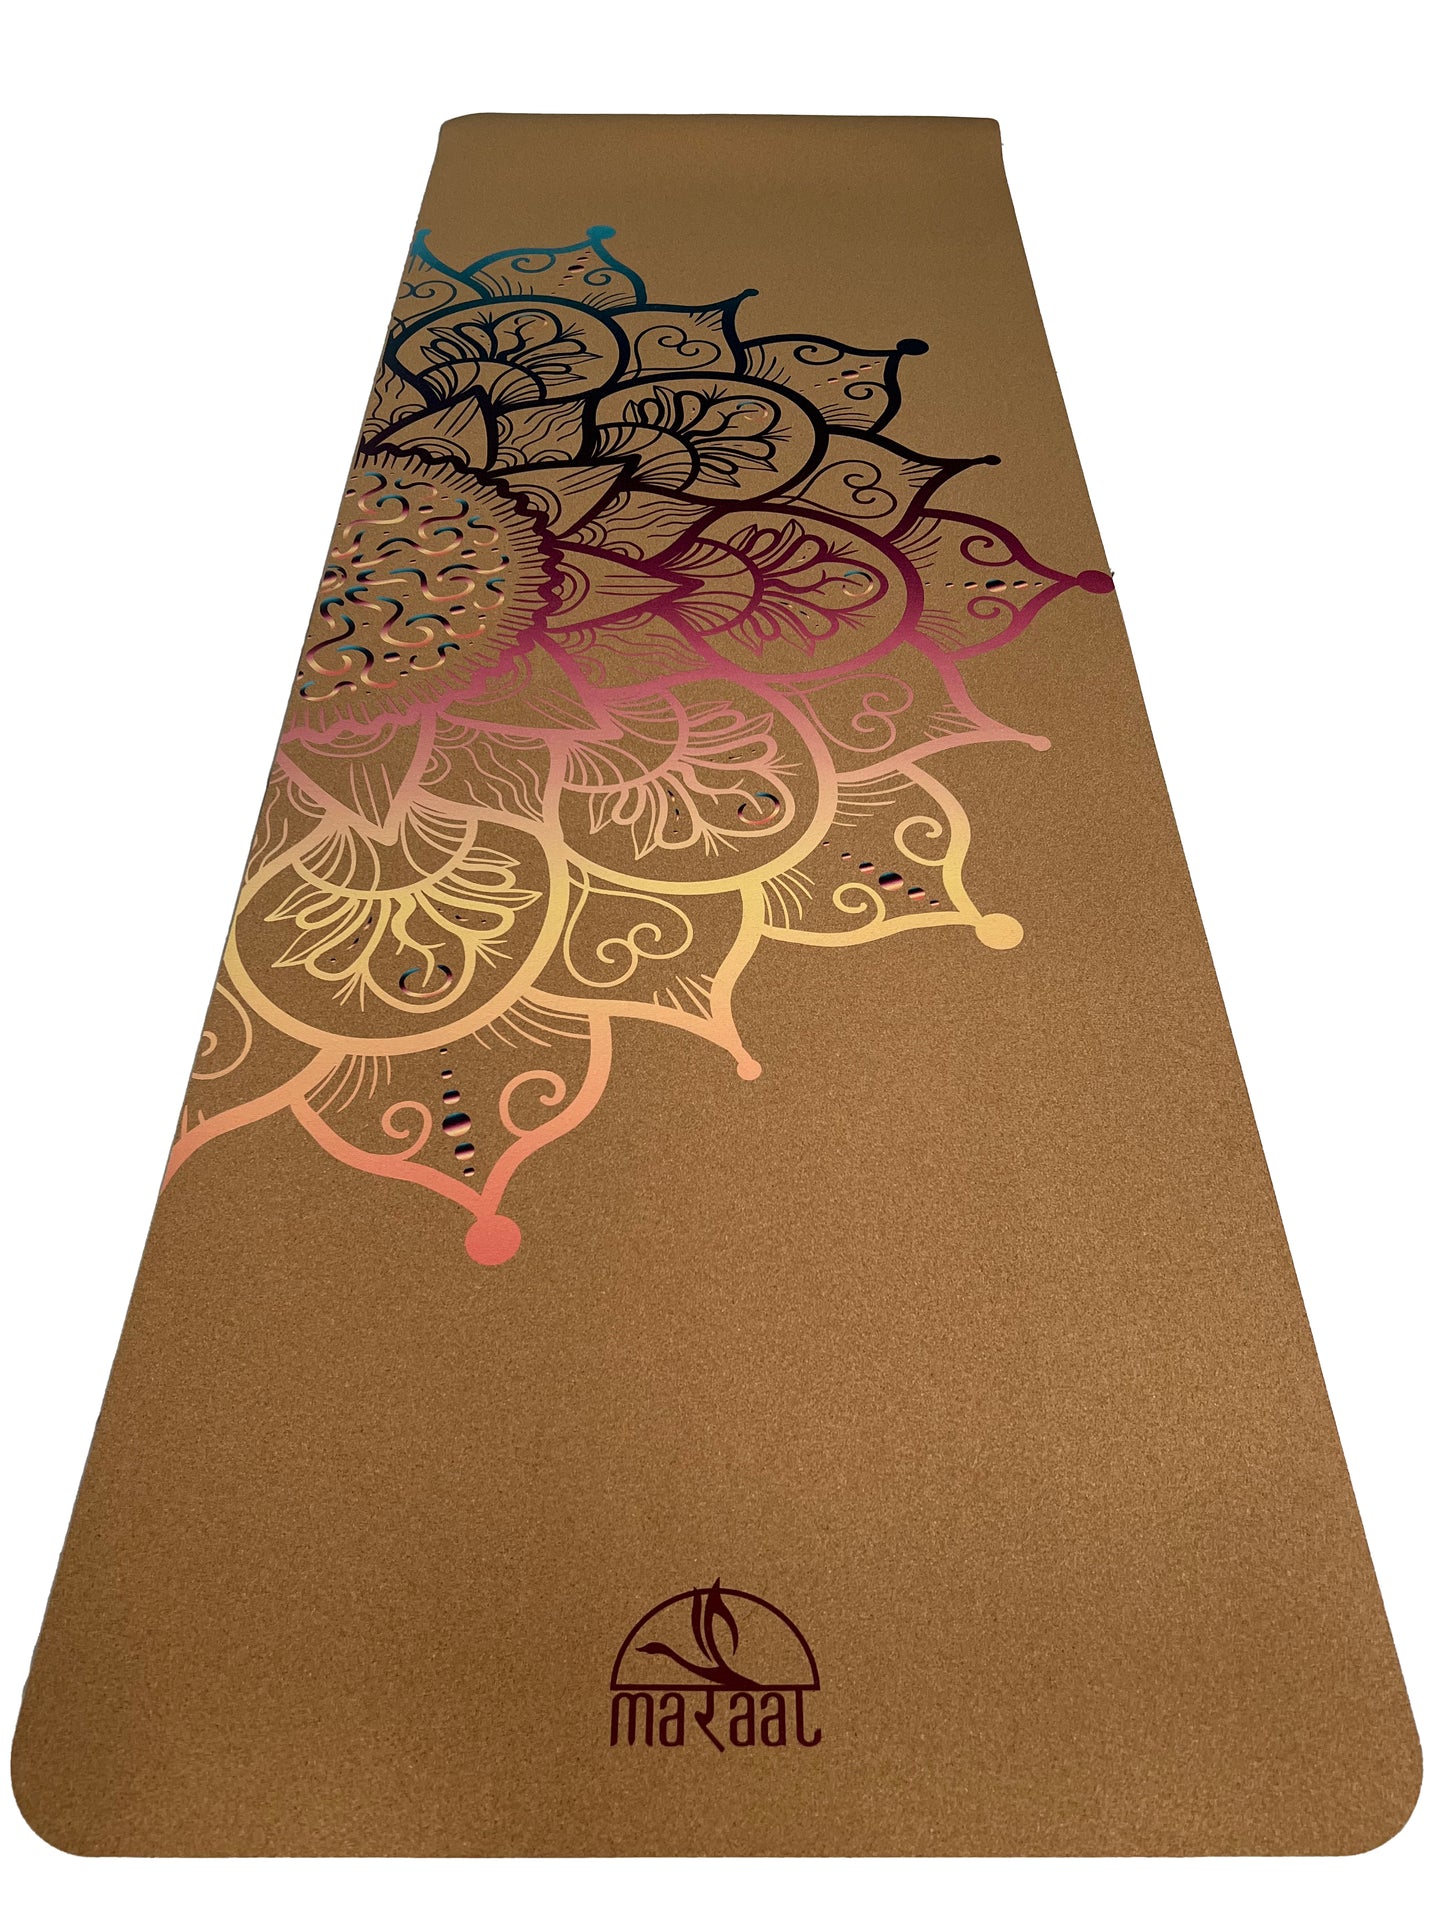 MARAAL Taru Resilience Organic Cork & Natural Rubber Yoga Mat- Mandala Colors